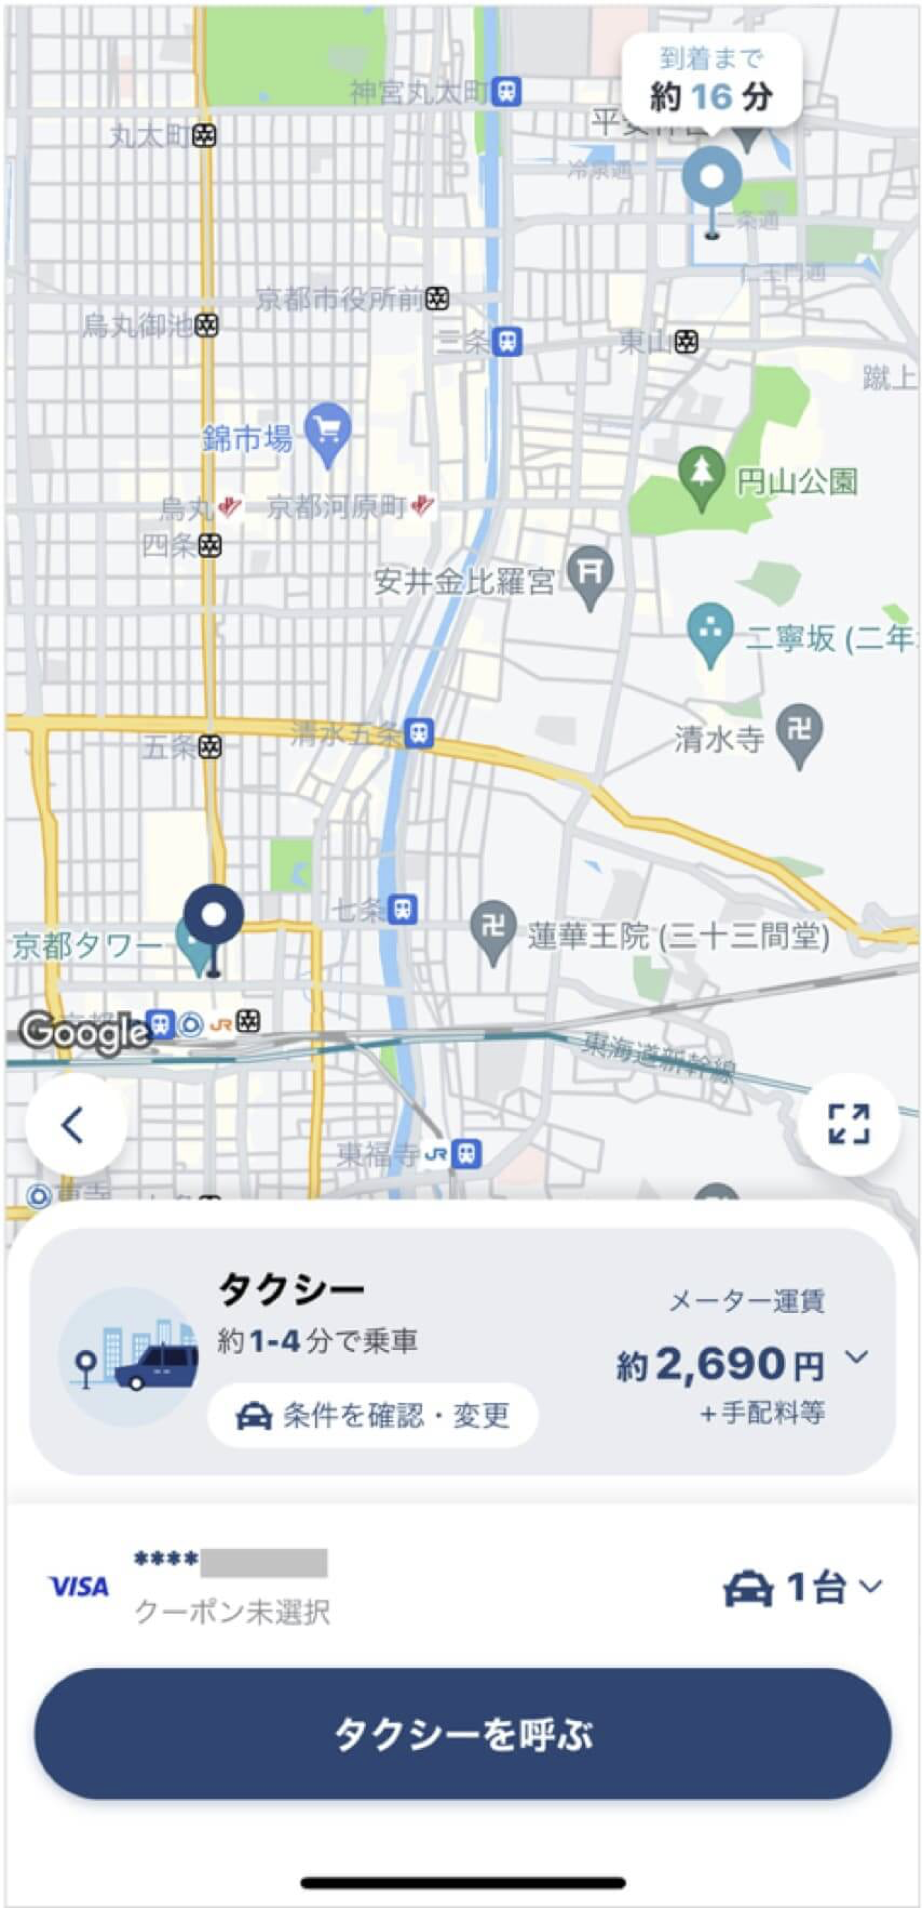 京都駅からみやこめっせまでのタクシー料金・所要時間まとめ